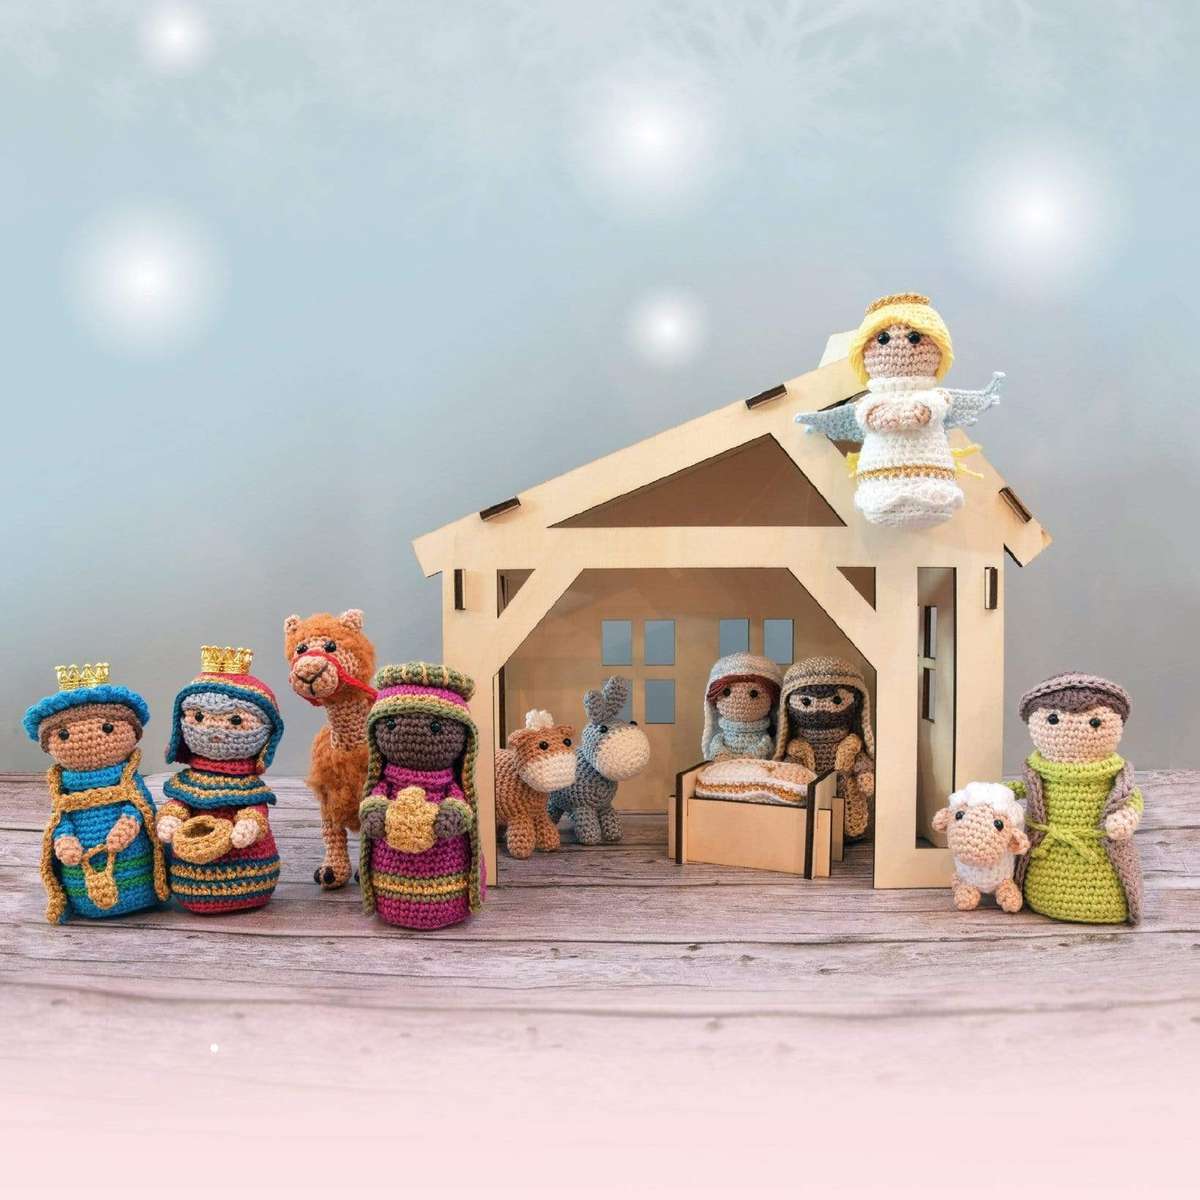 パズルのキリスト降誕のシーン 写真からオンラインパズル